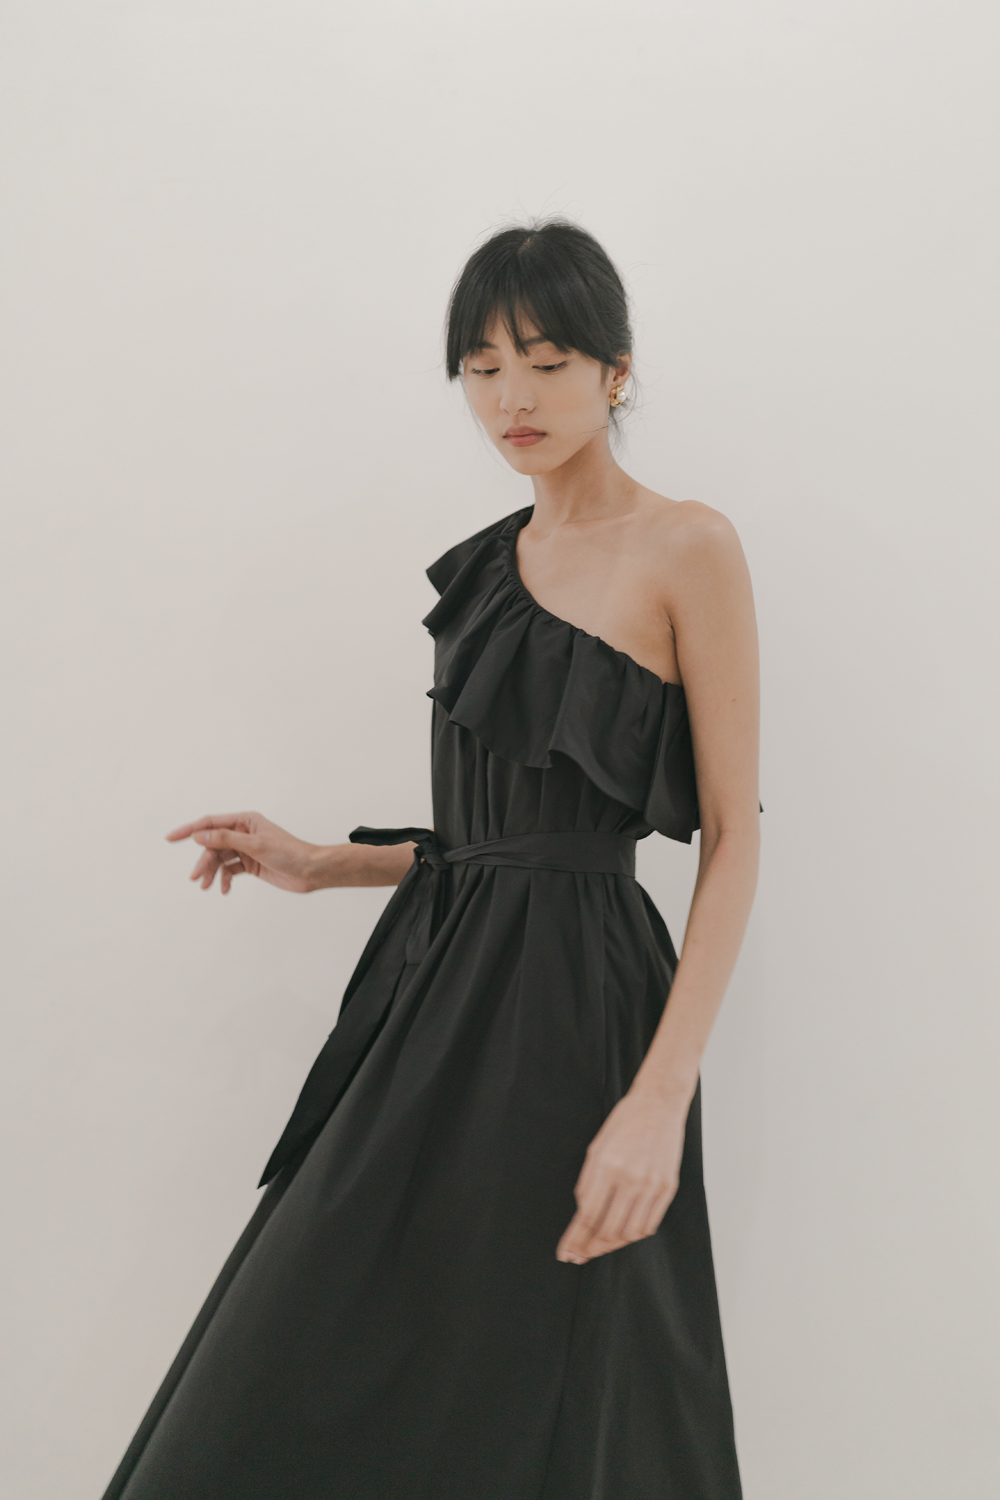 Tara One Shoulder Dress in Black (30% OFF)